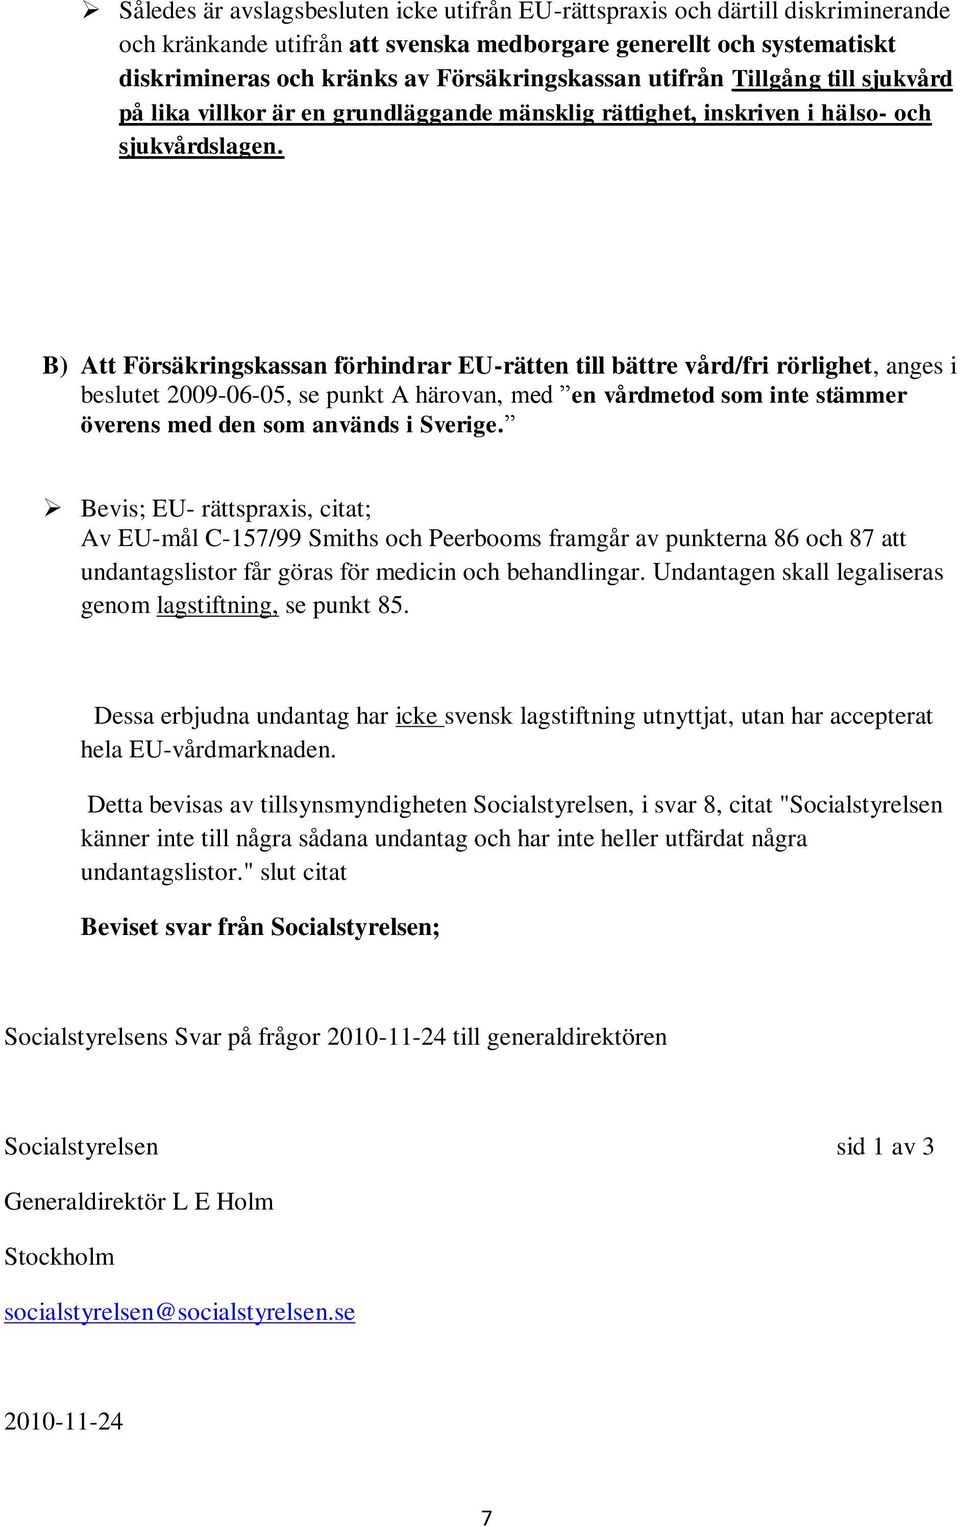 B) Att Försäkringskassan förhindrar EU-rätten till bättre vård/fri rörlighet, anges i beslutet 2009-06-05, se punkt A härovan, med en vårdmetod som inte stämmer överens med den som används i Sverige.